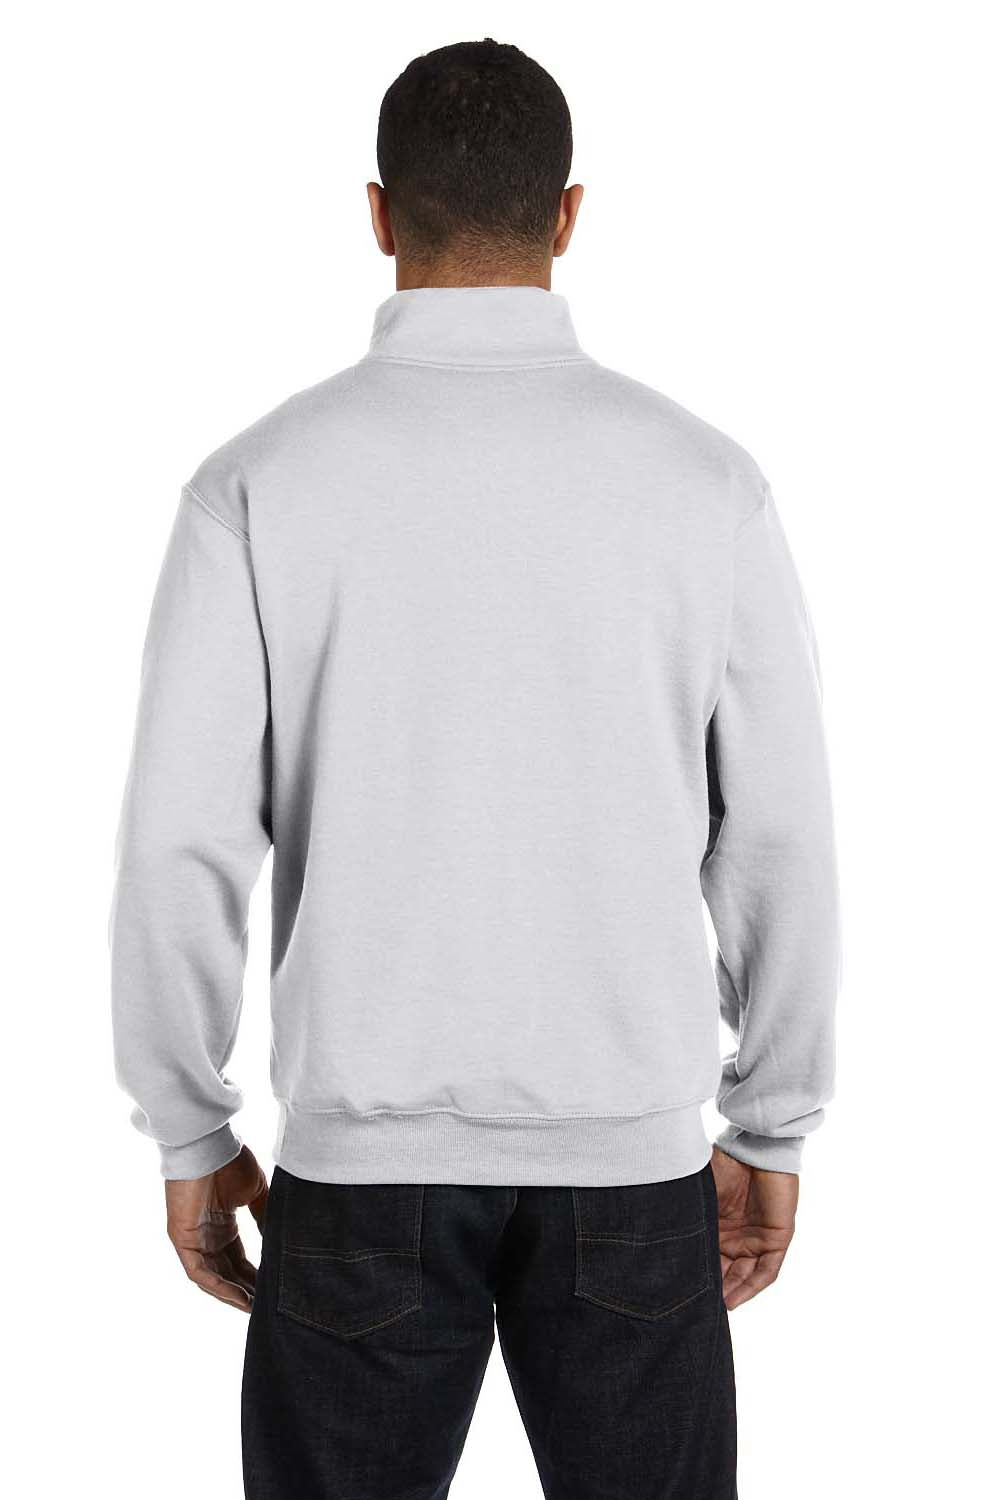 Jerzees 995M Mens NuBlend Fleece 1/4 Zip Sweatshirt Ash Grey Back